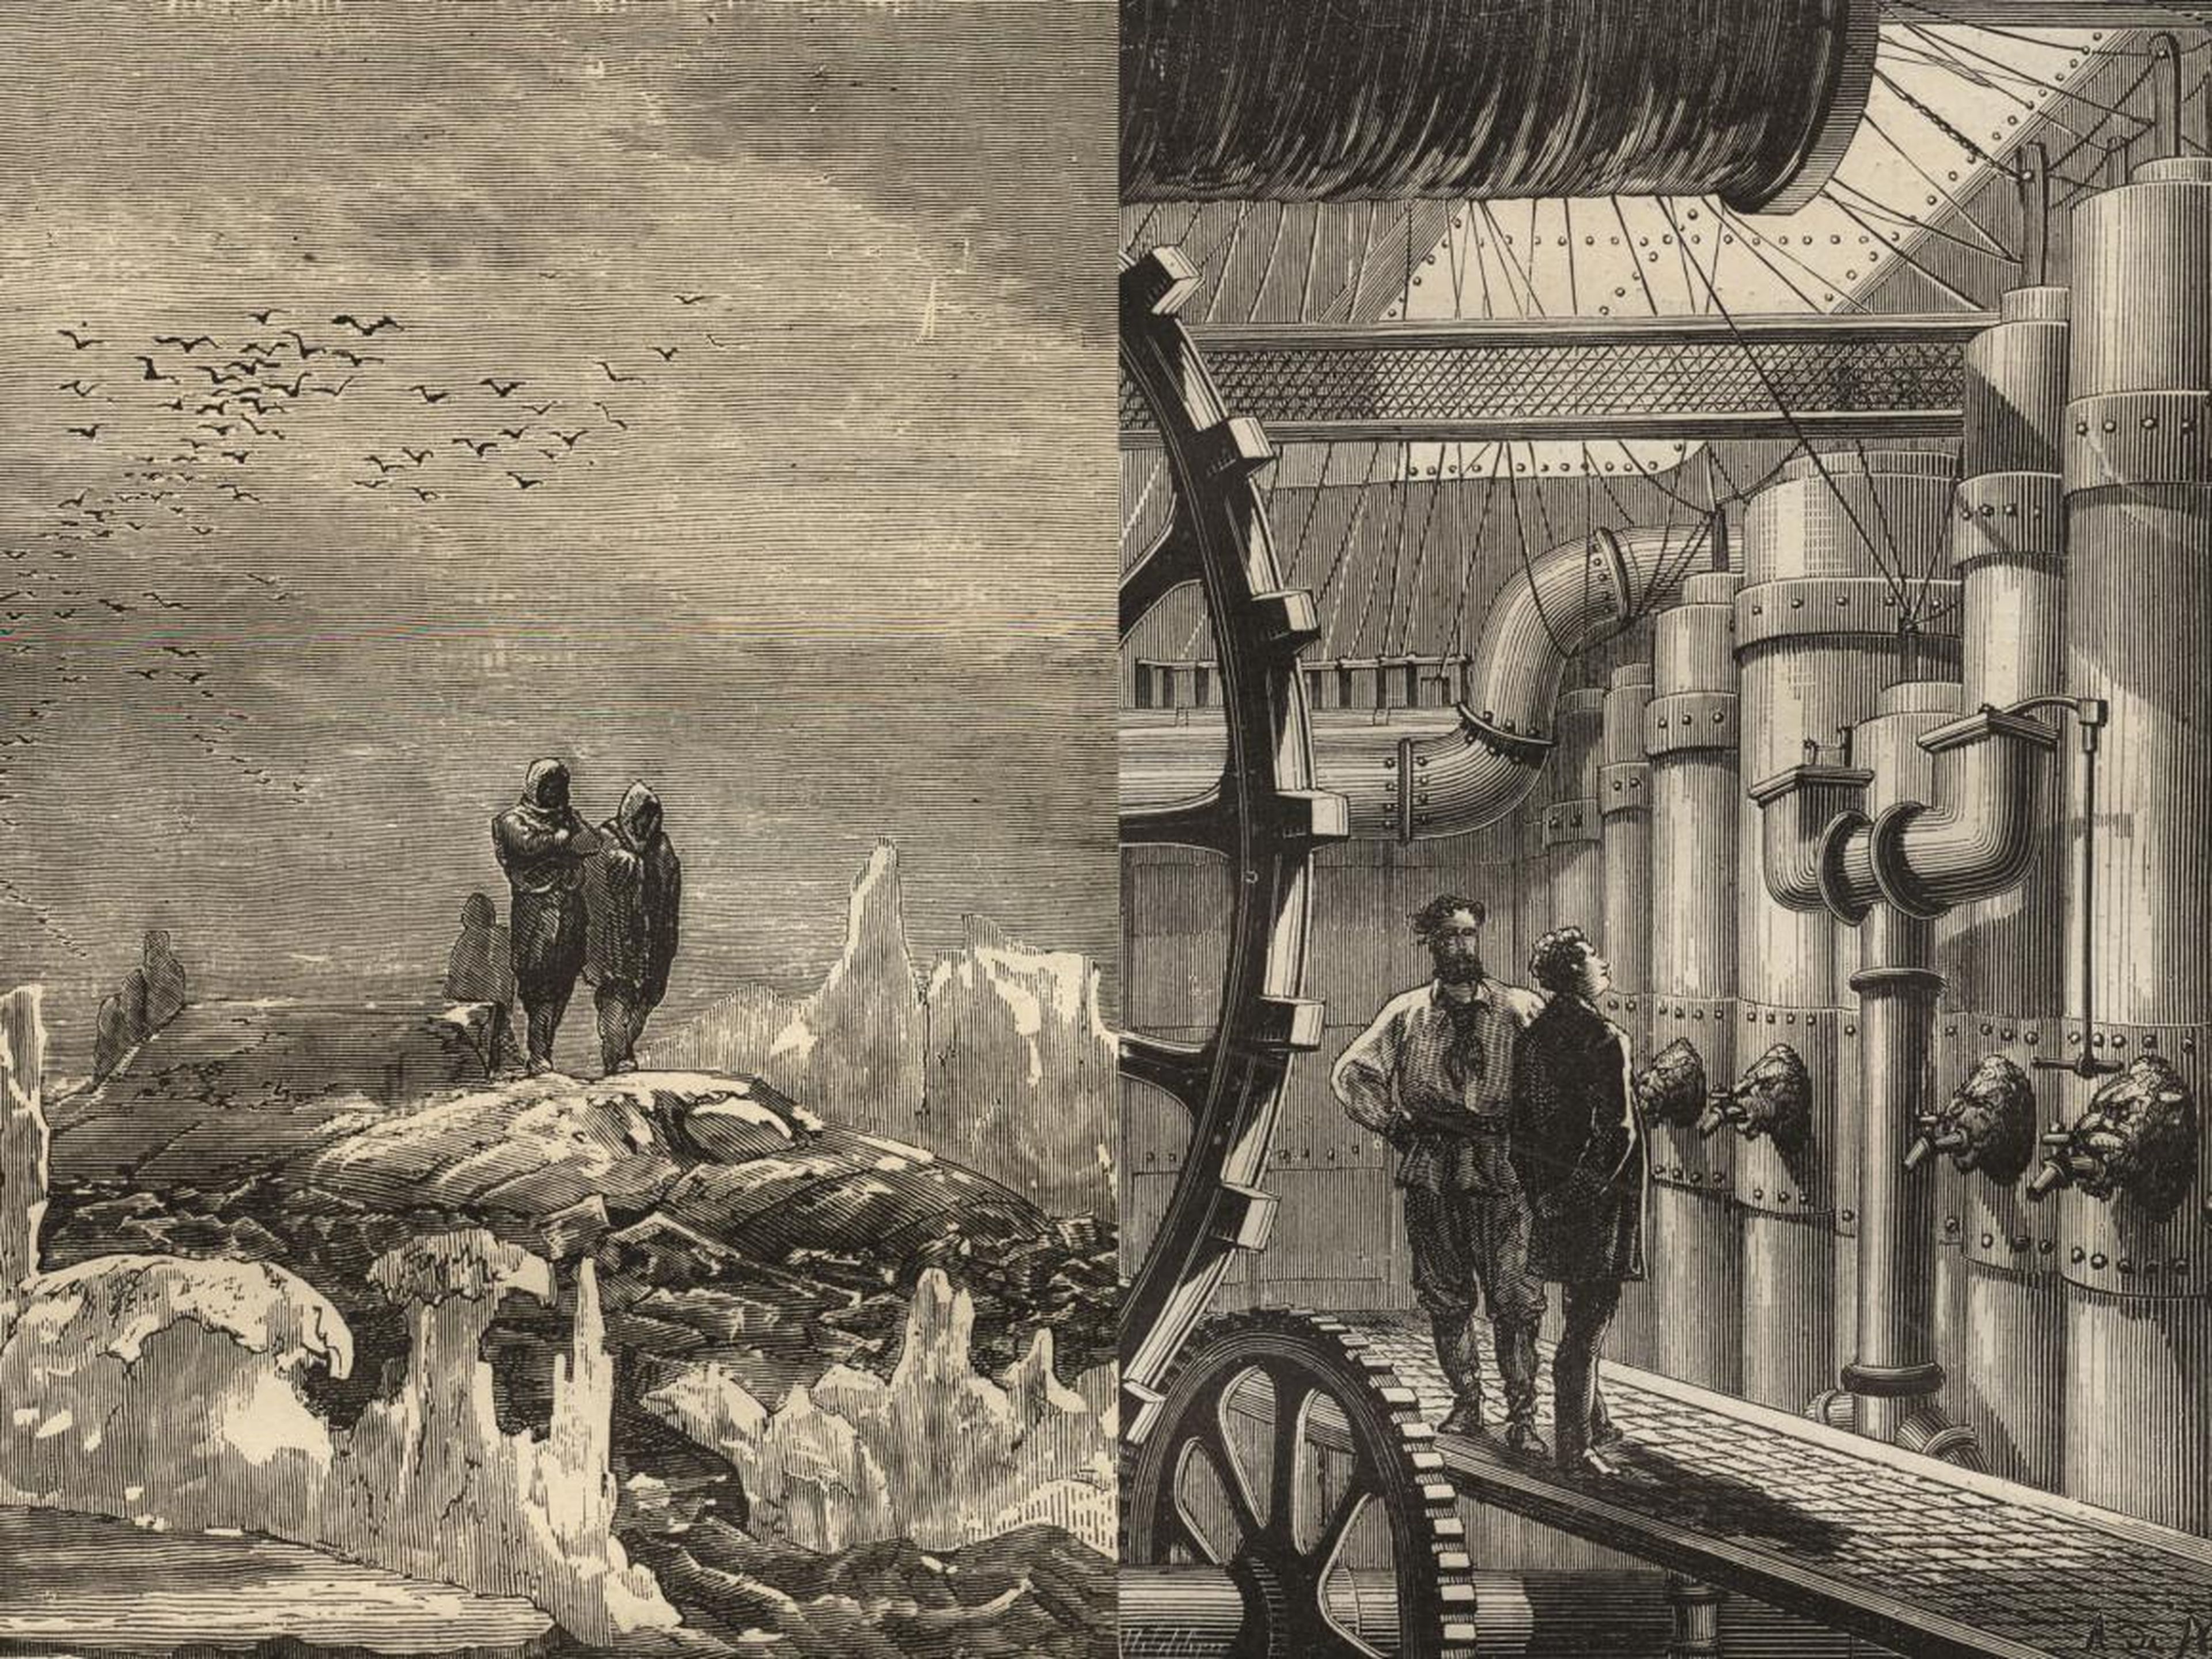 Ilustraciones para la novela "Veinte mil leguas de viaje submarino" de Julio Verne.